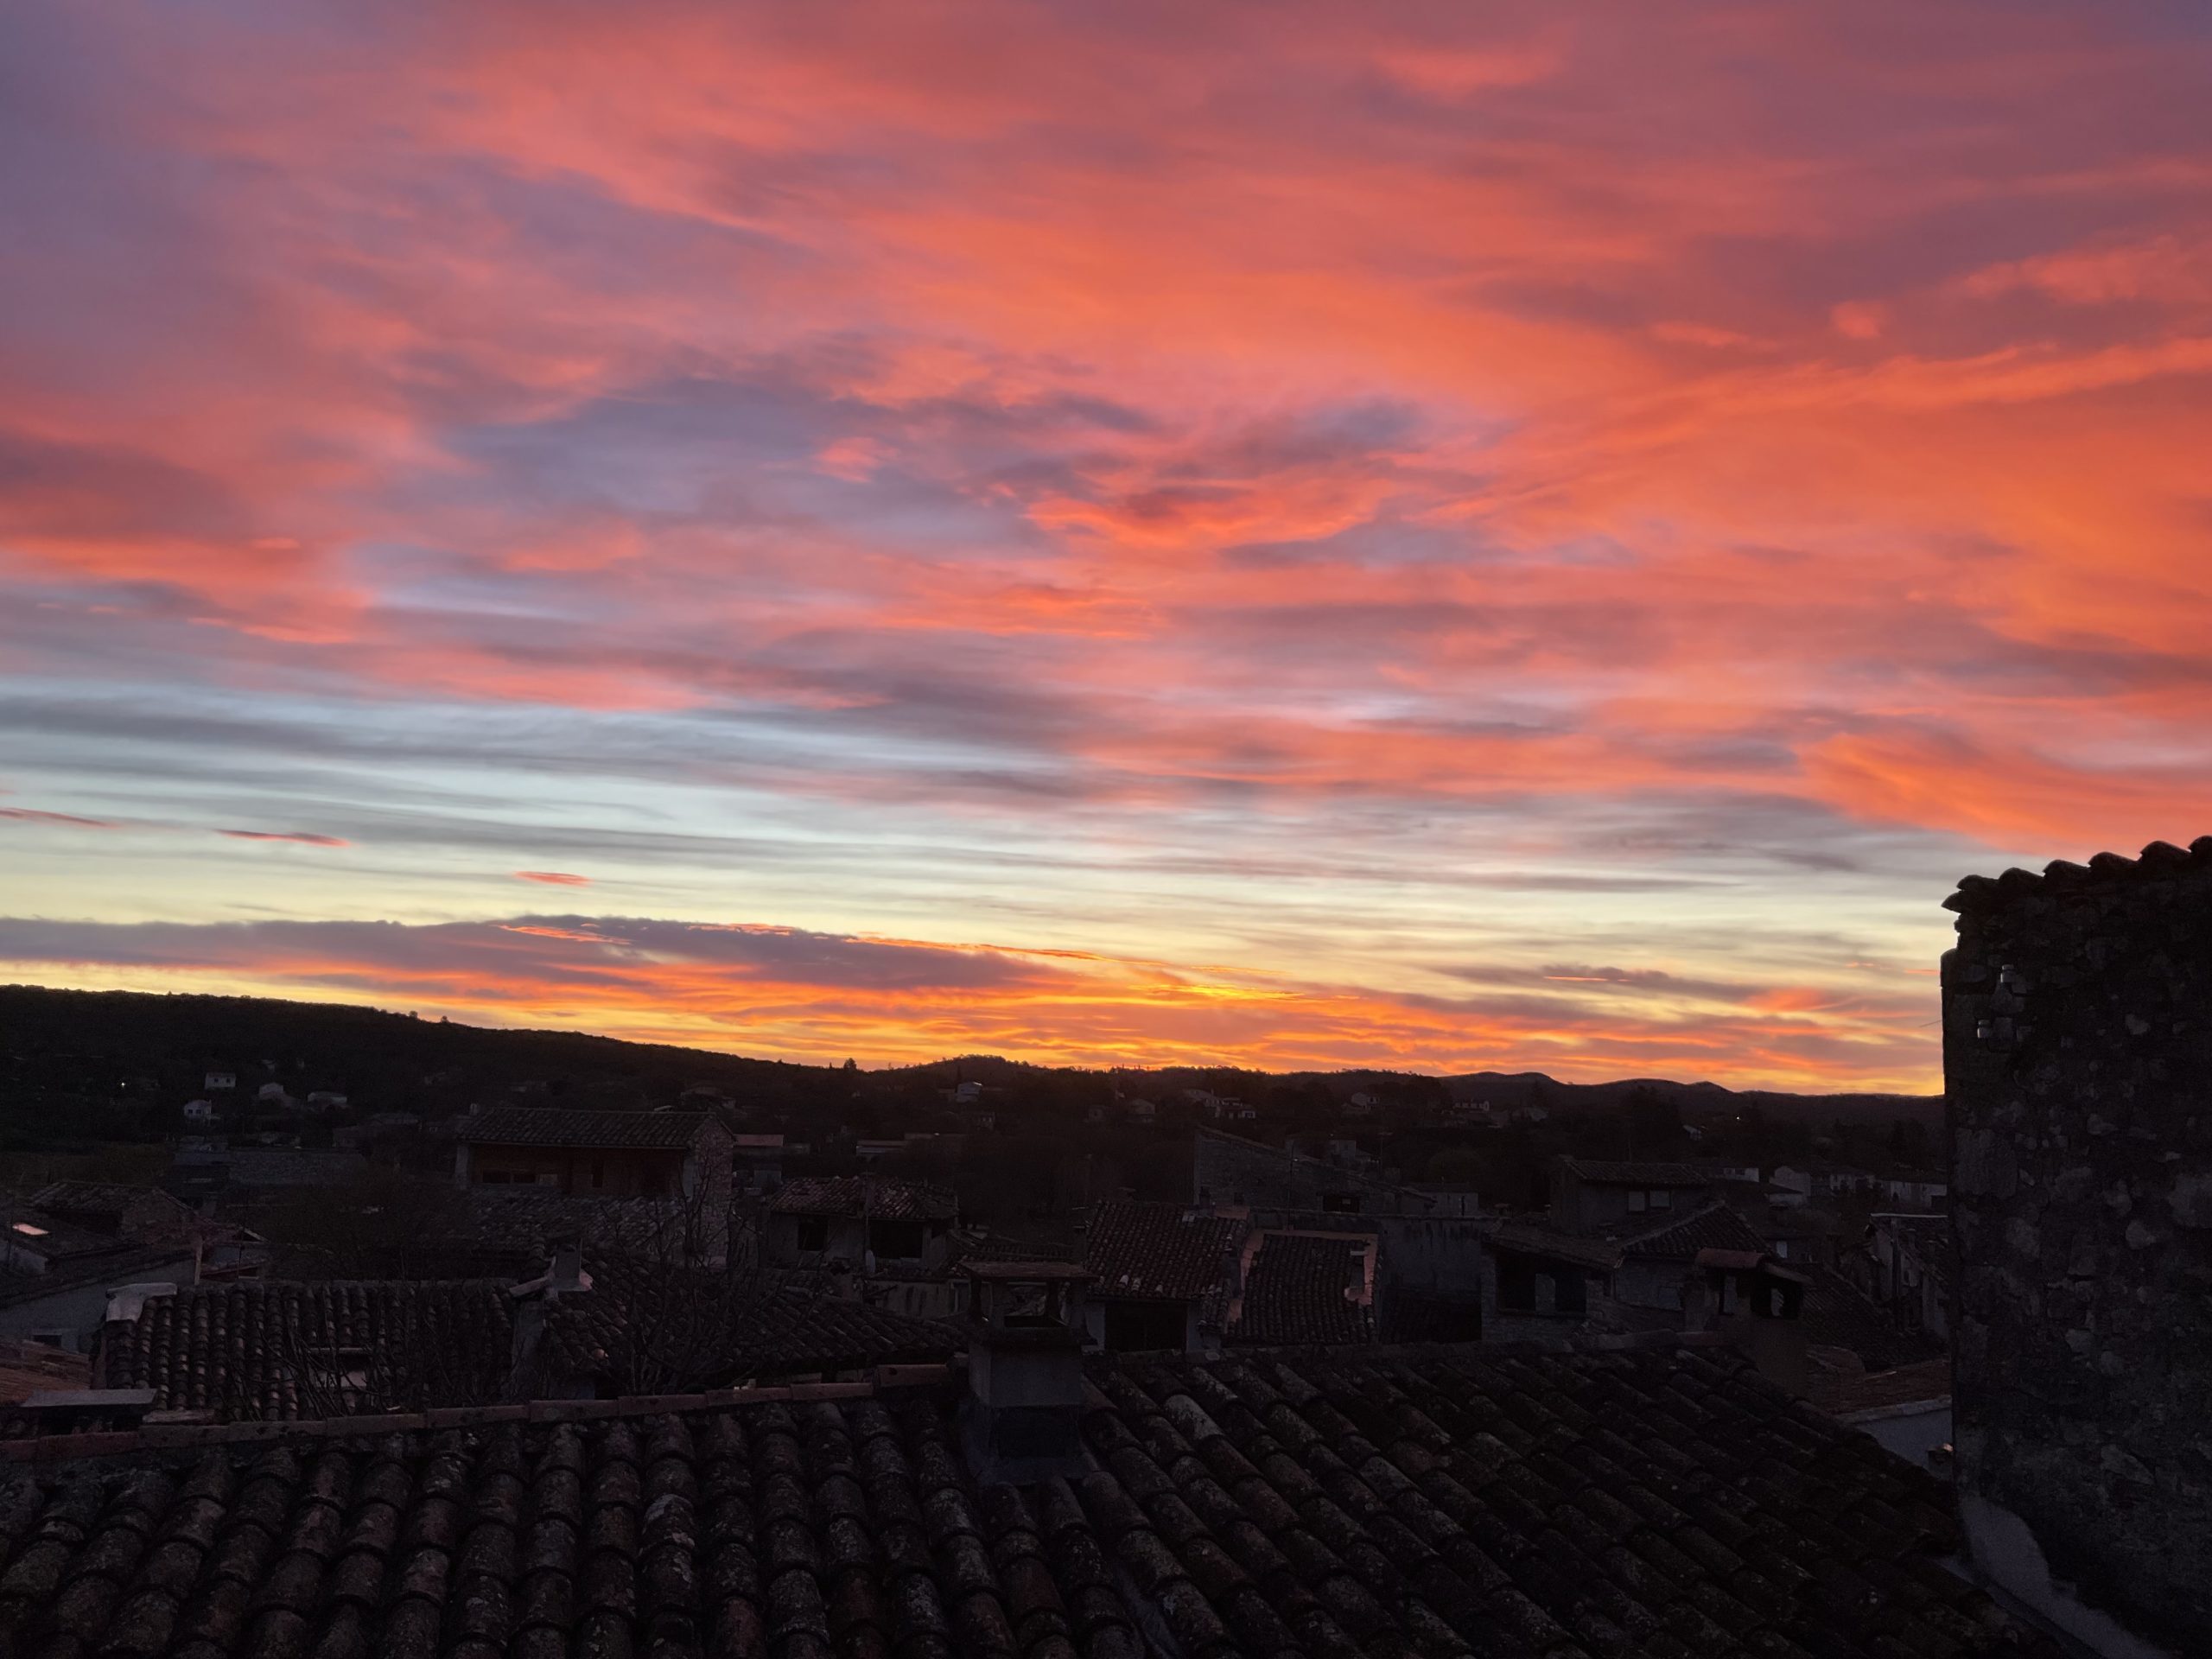 ciel rougeoyant à l’aube au dessus des toits encore dans la pénombre de mon village médiéval, pris par la fenêtre de ma chambre